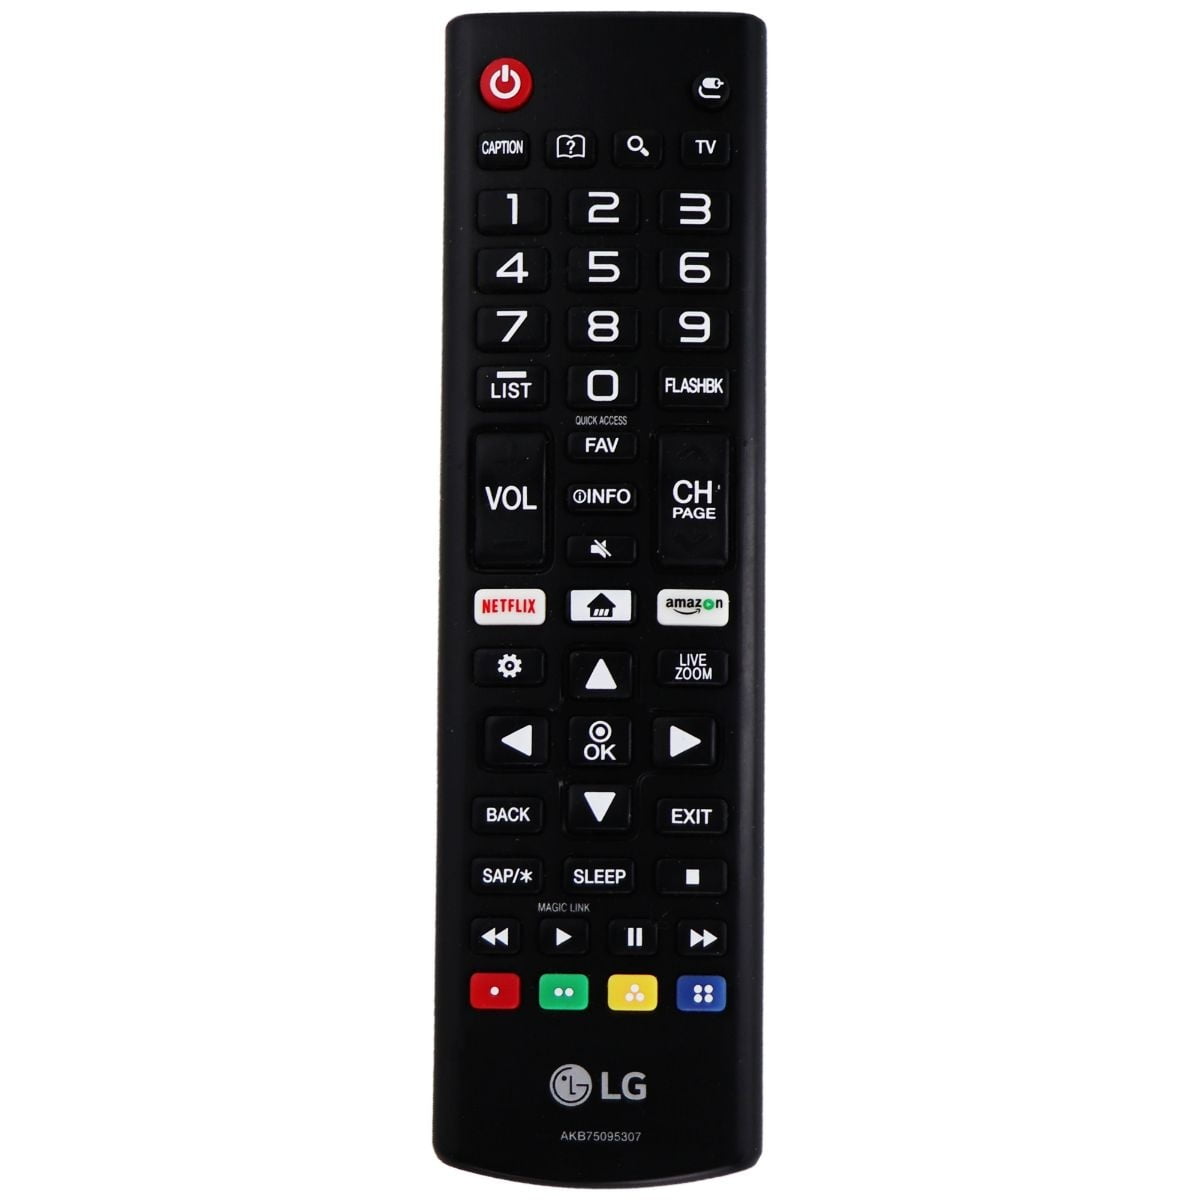 Lg Remote Control Akb75095307 For Select Lg Tvs Black Refurbished